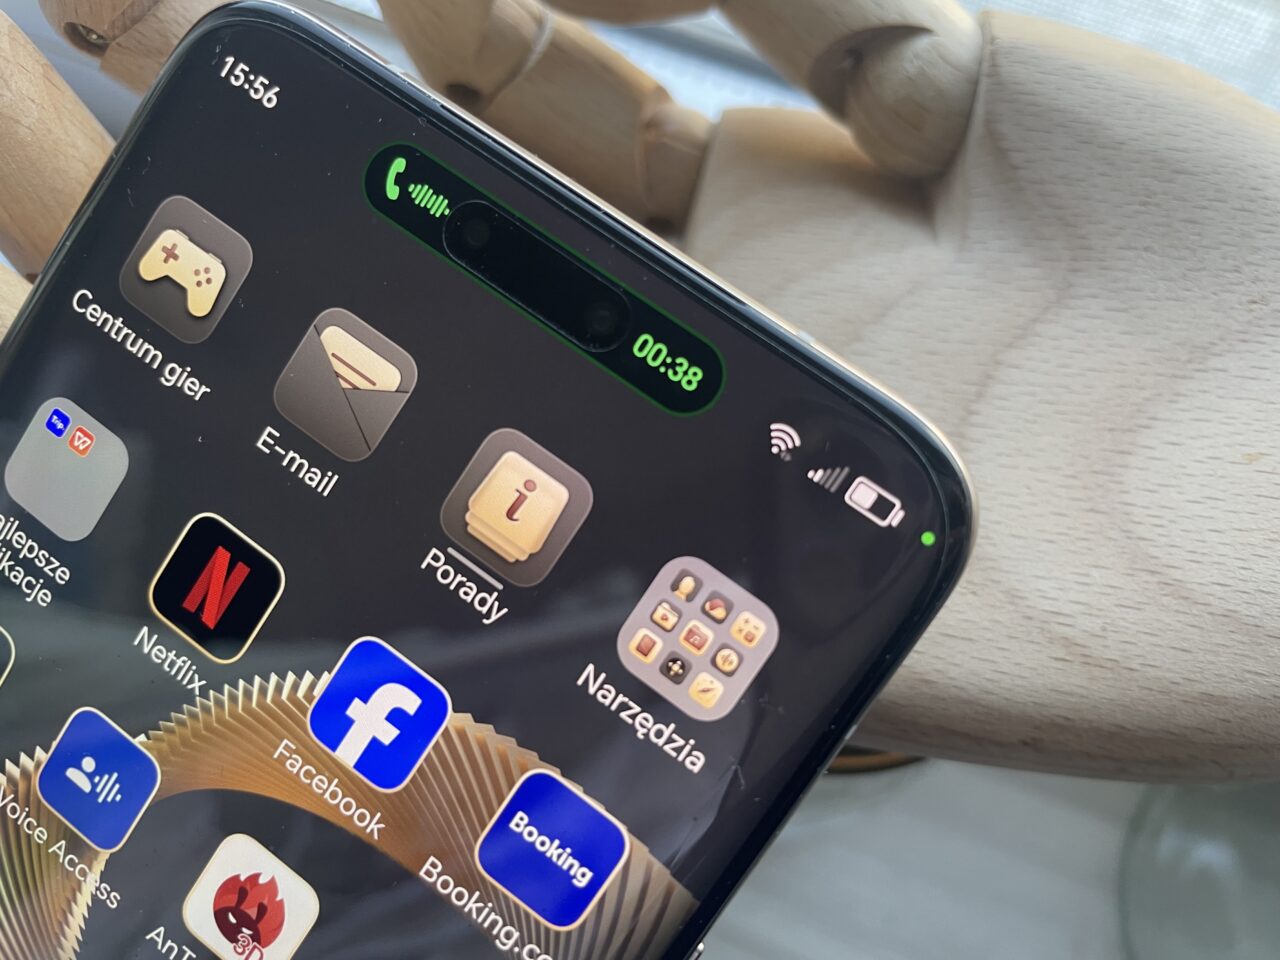 Ekran smartfona z widocznymi ikonami aplikacji i paskiem stanu z sygnałem, baterią i czasem "15:36".